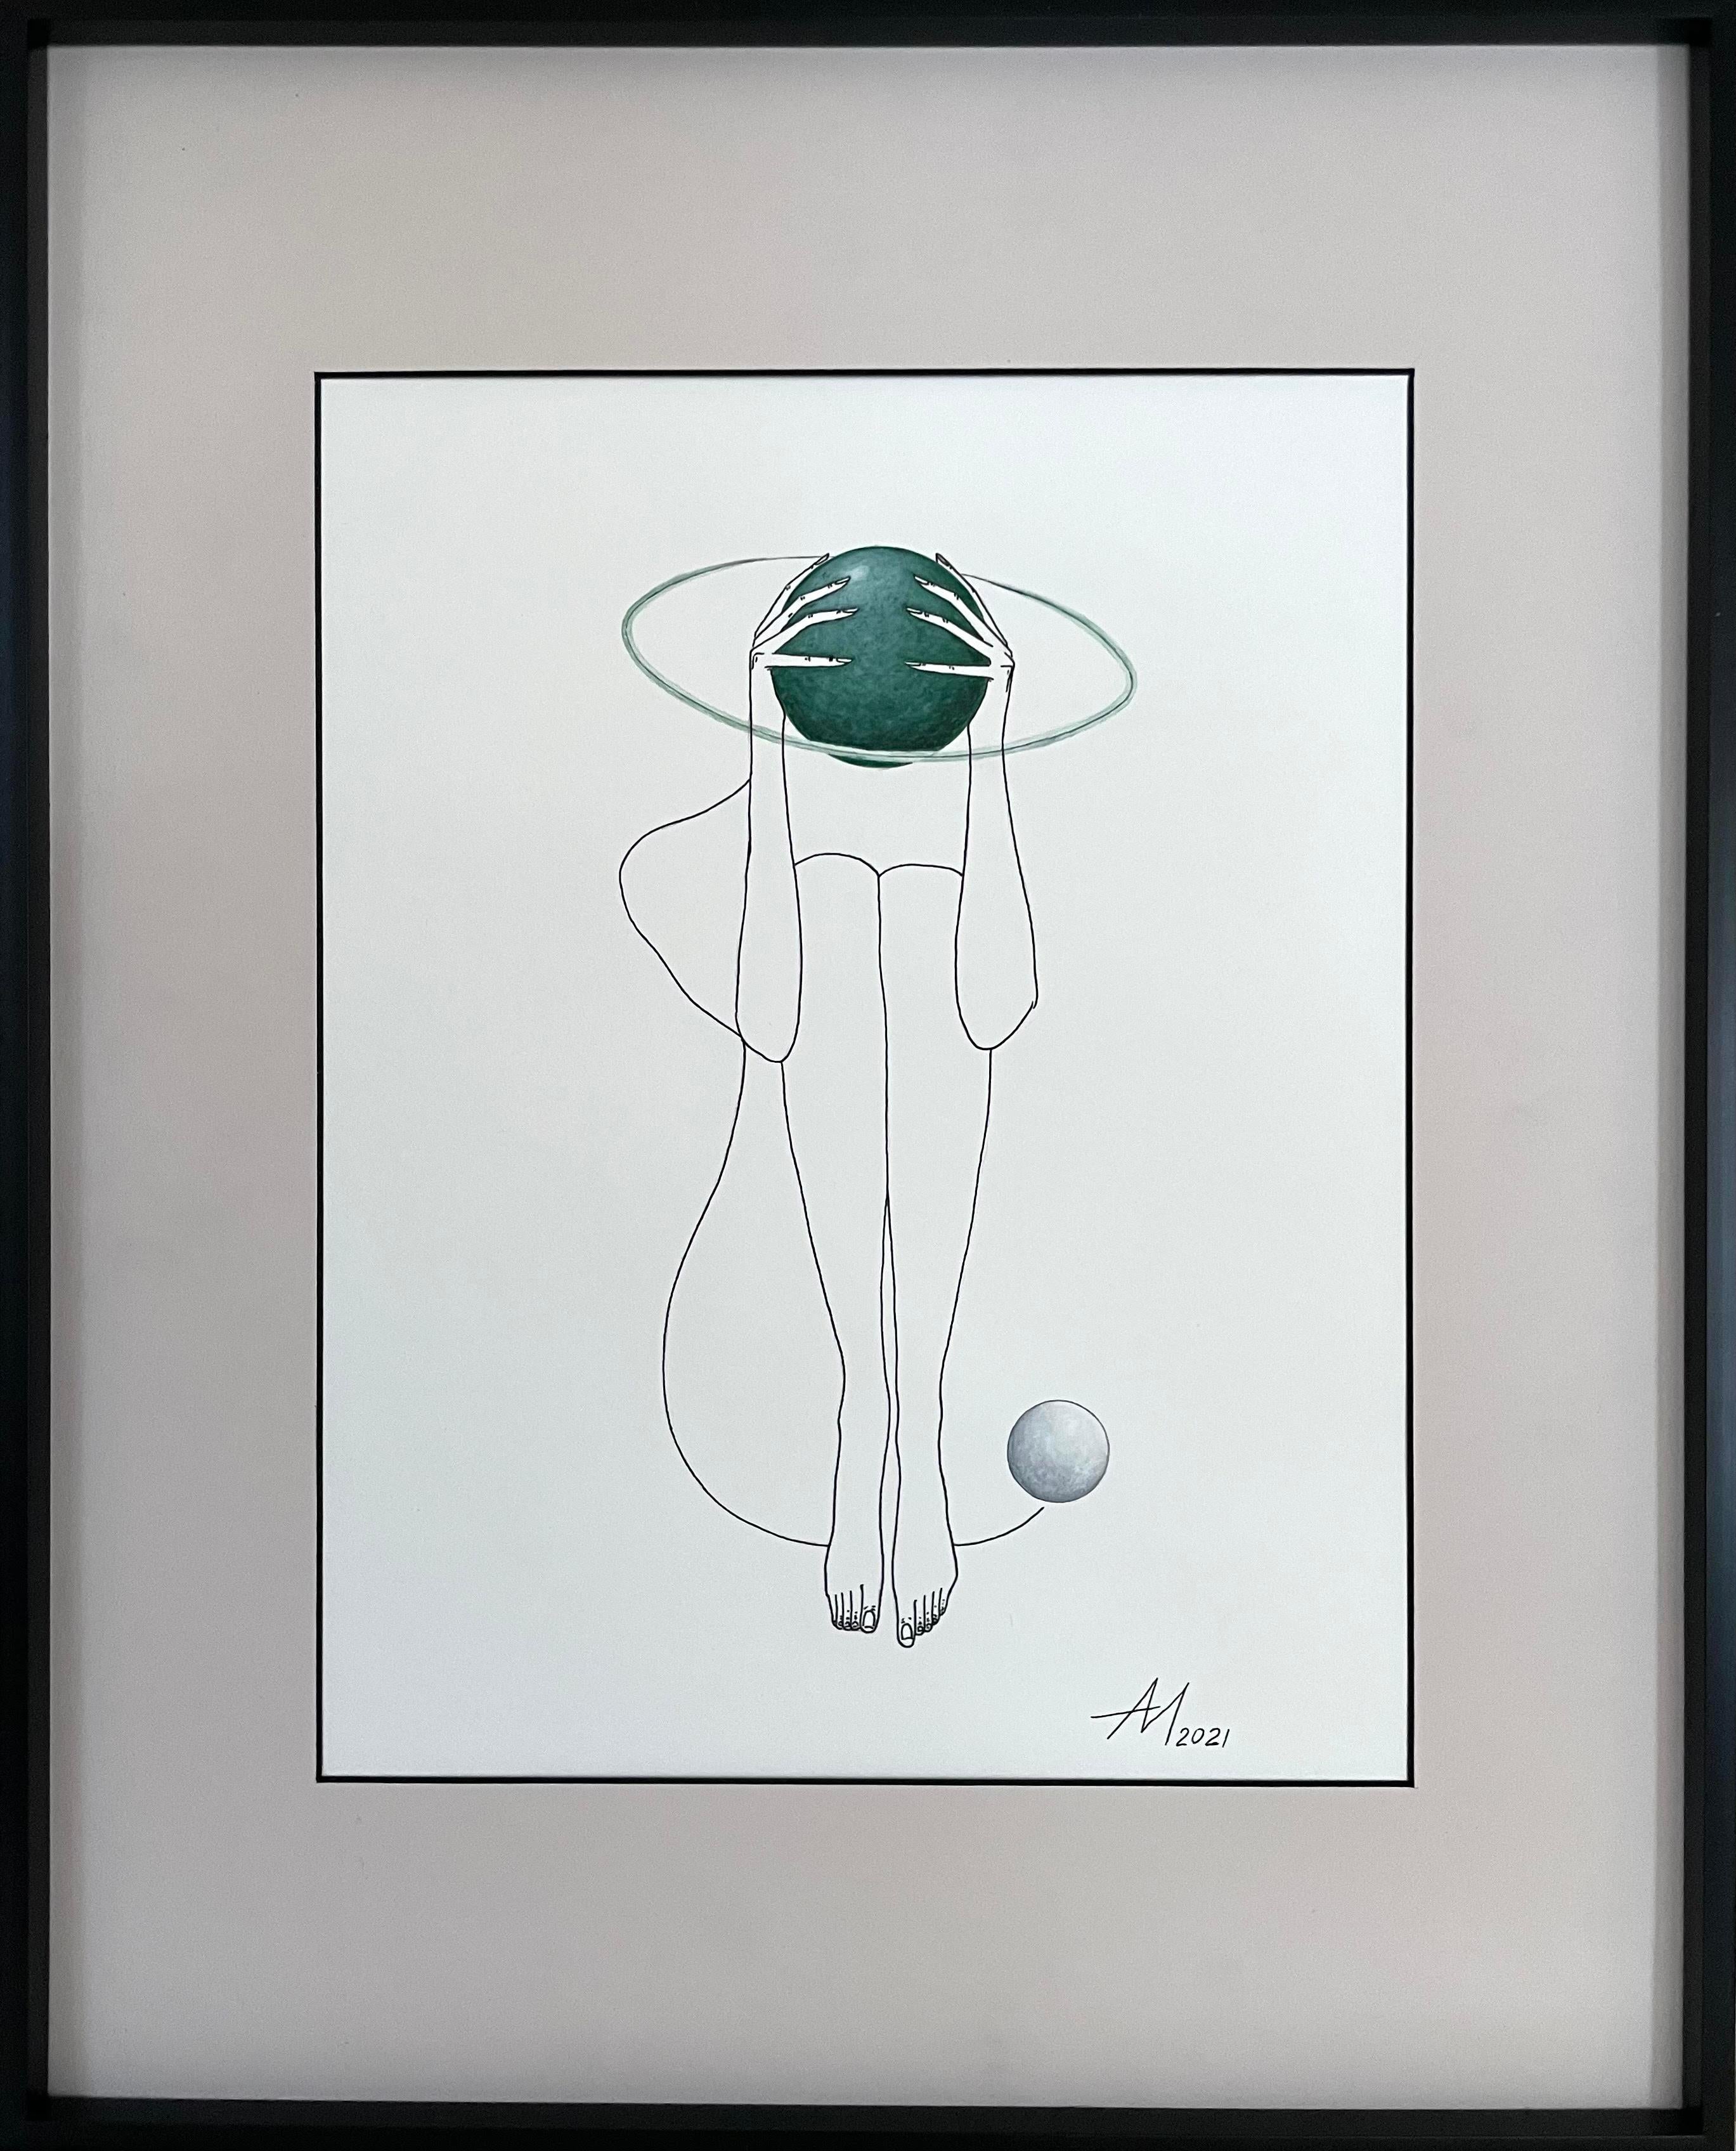 Mila Akopova Nude – Grüner Saturn – Linienzeichnung, Frauenfigur mit Kreis